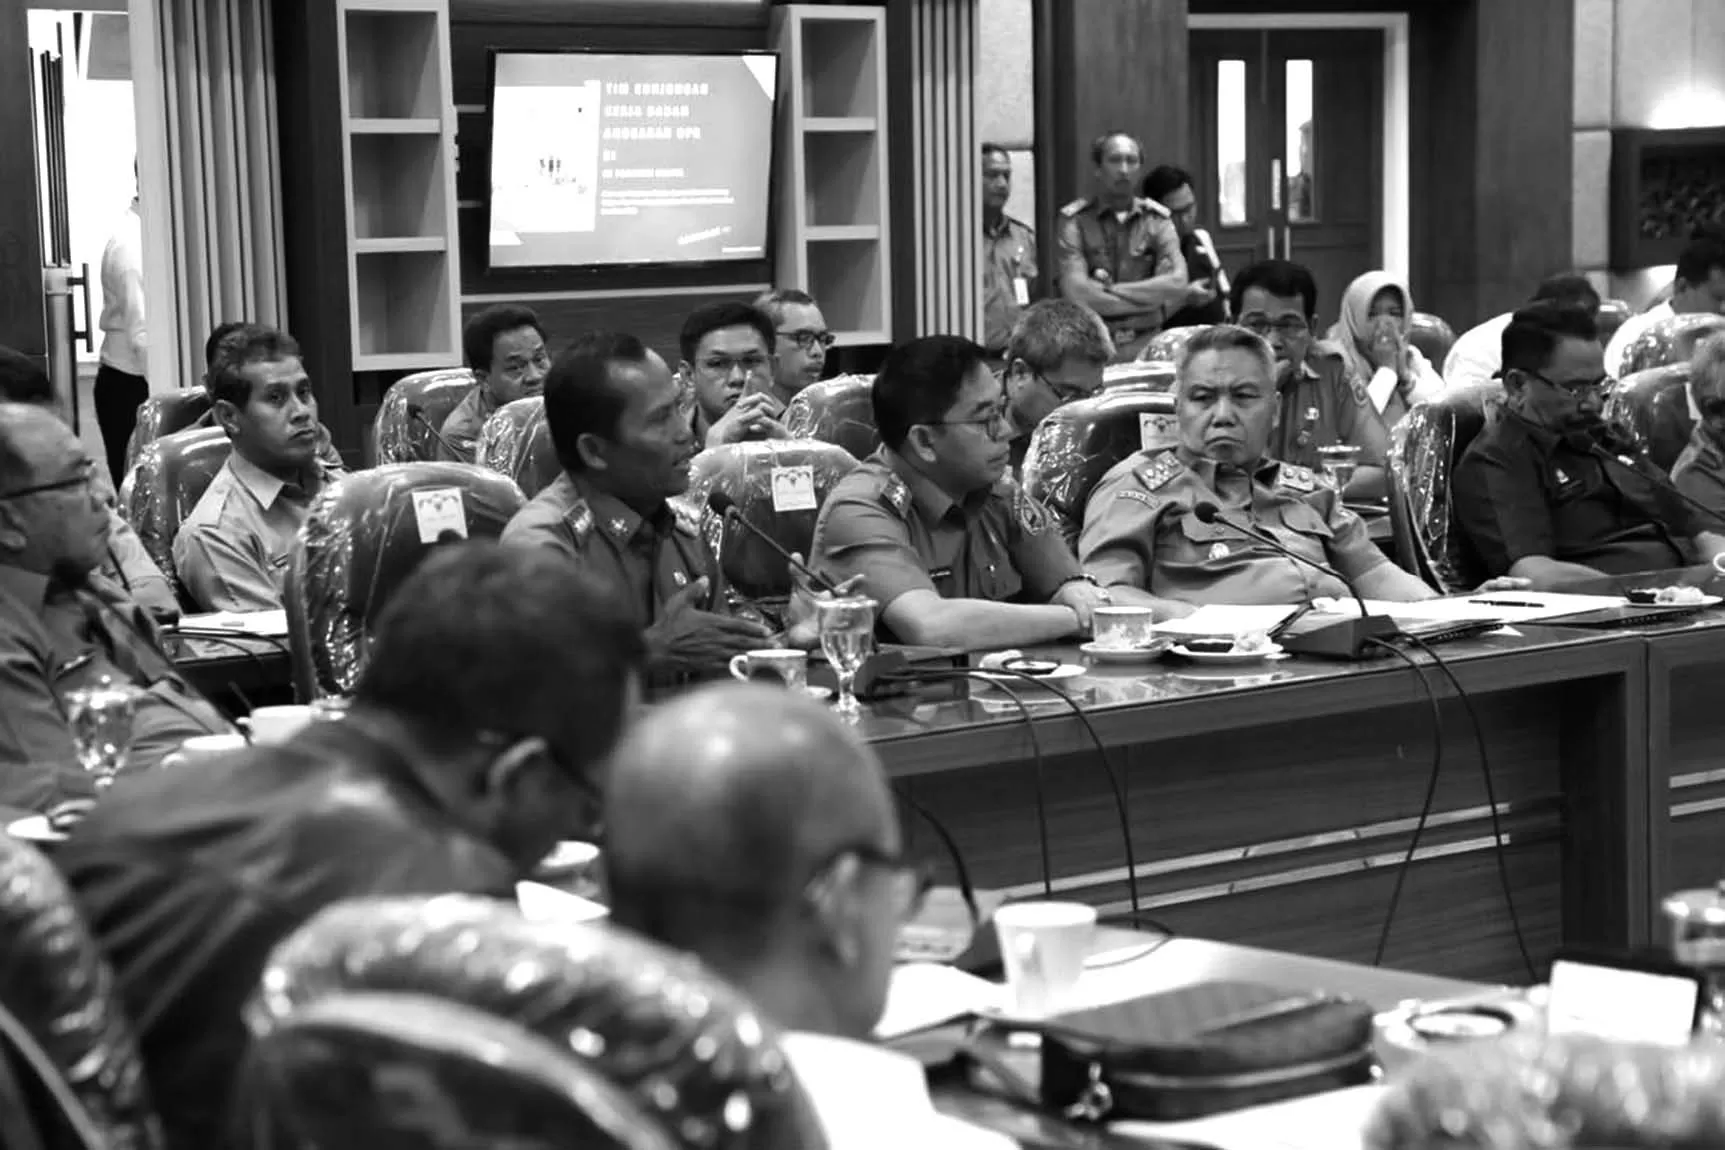 HADIR: Bupati Tala Sukamta merupakan satu-satunya Kepala Daerah di Kalsel yang hadir saat kunjungan kerja Tim Badan Anggaran DPR RI ke Provinsi Kalimantan Selatan.